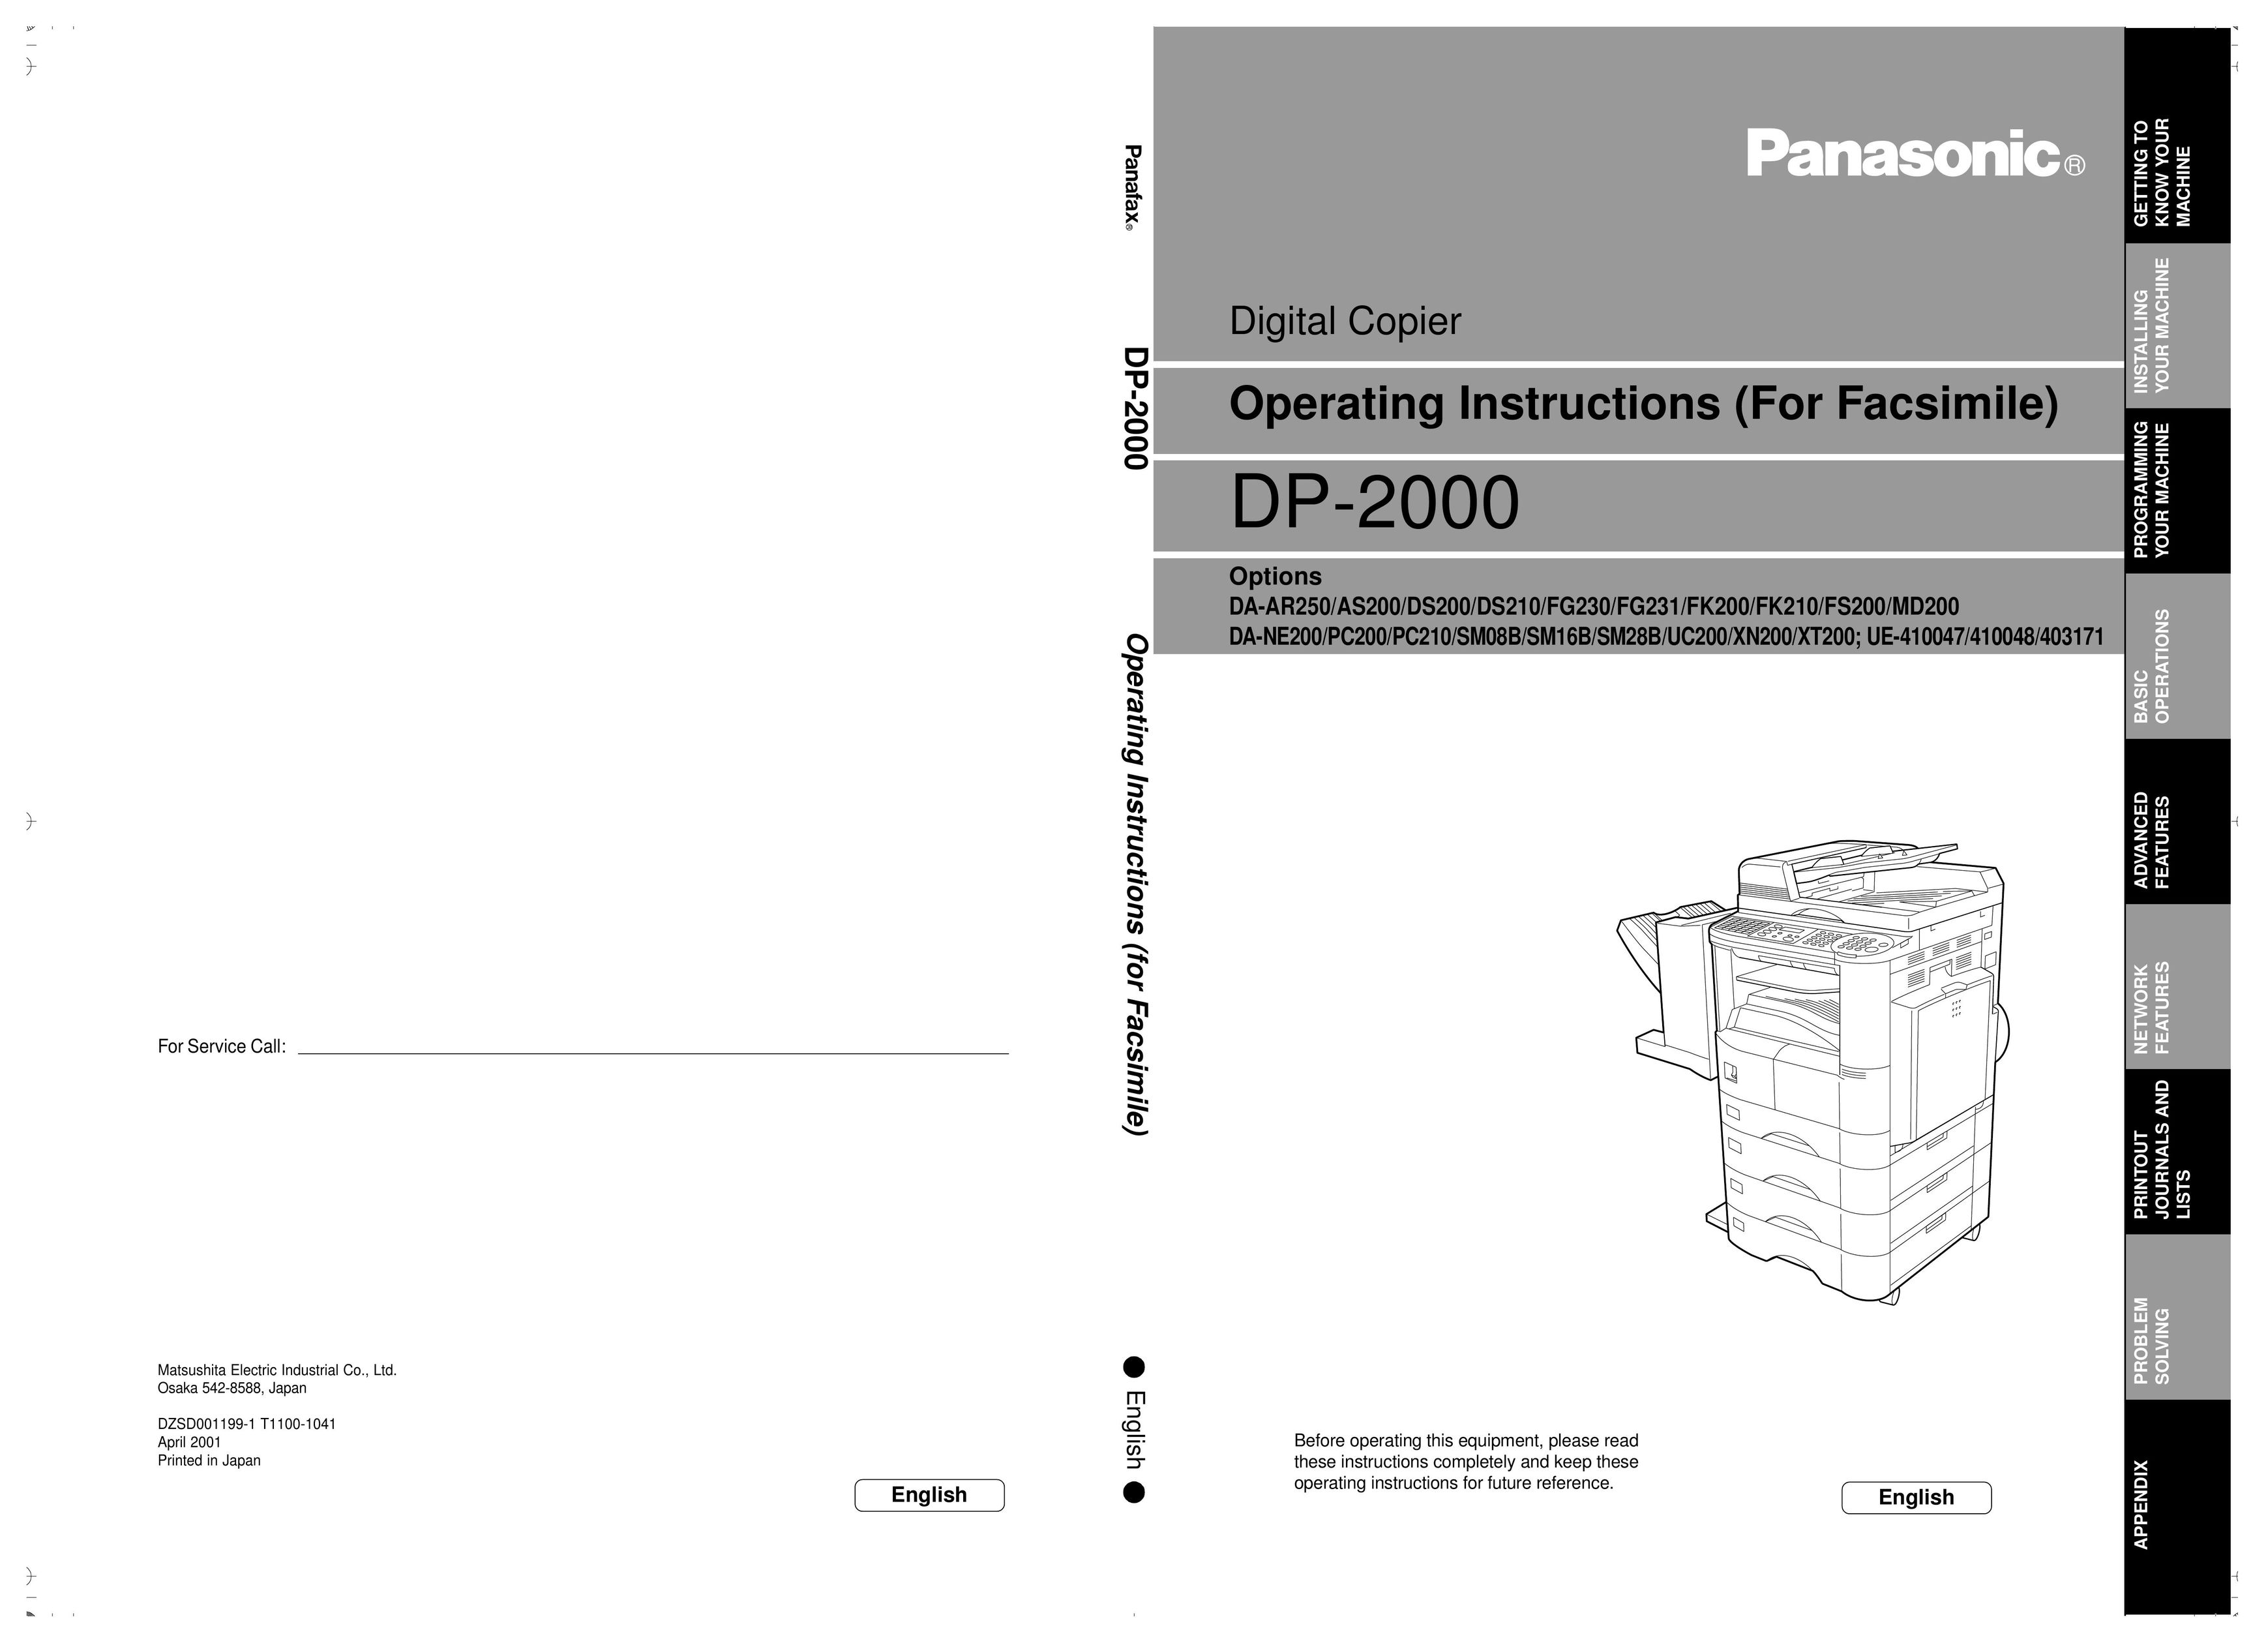 Panasonic 410048 All in One Printer User Manual